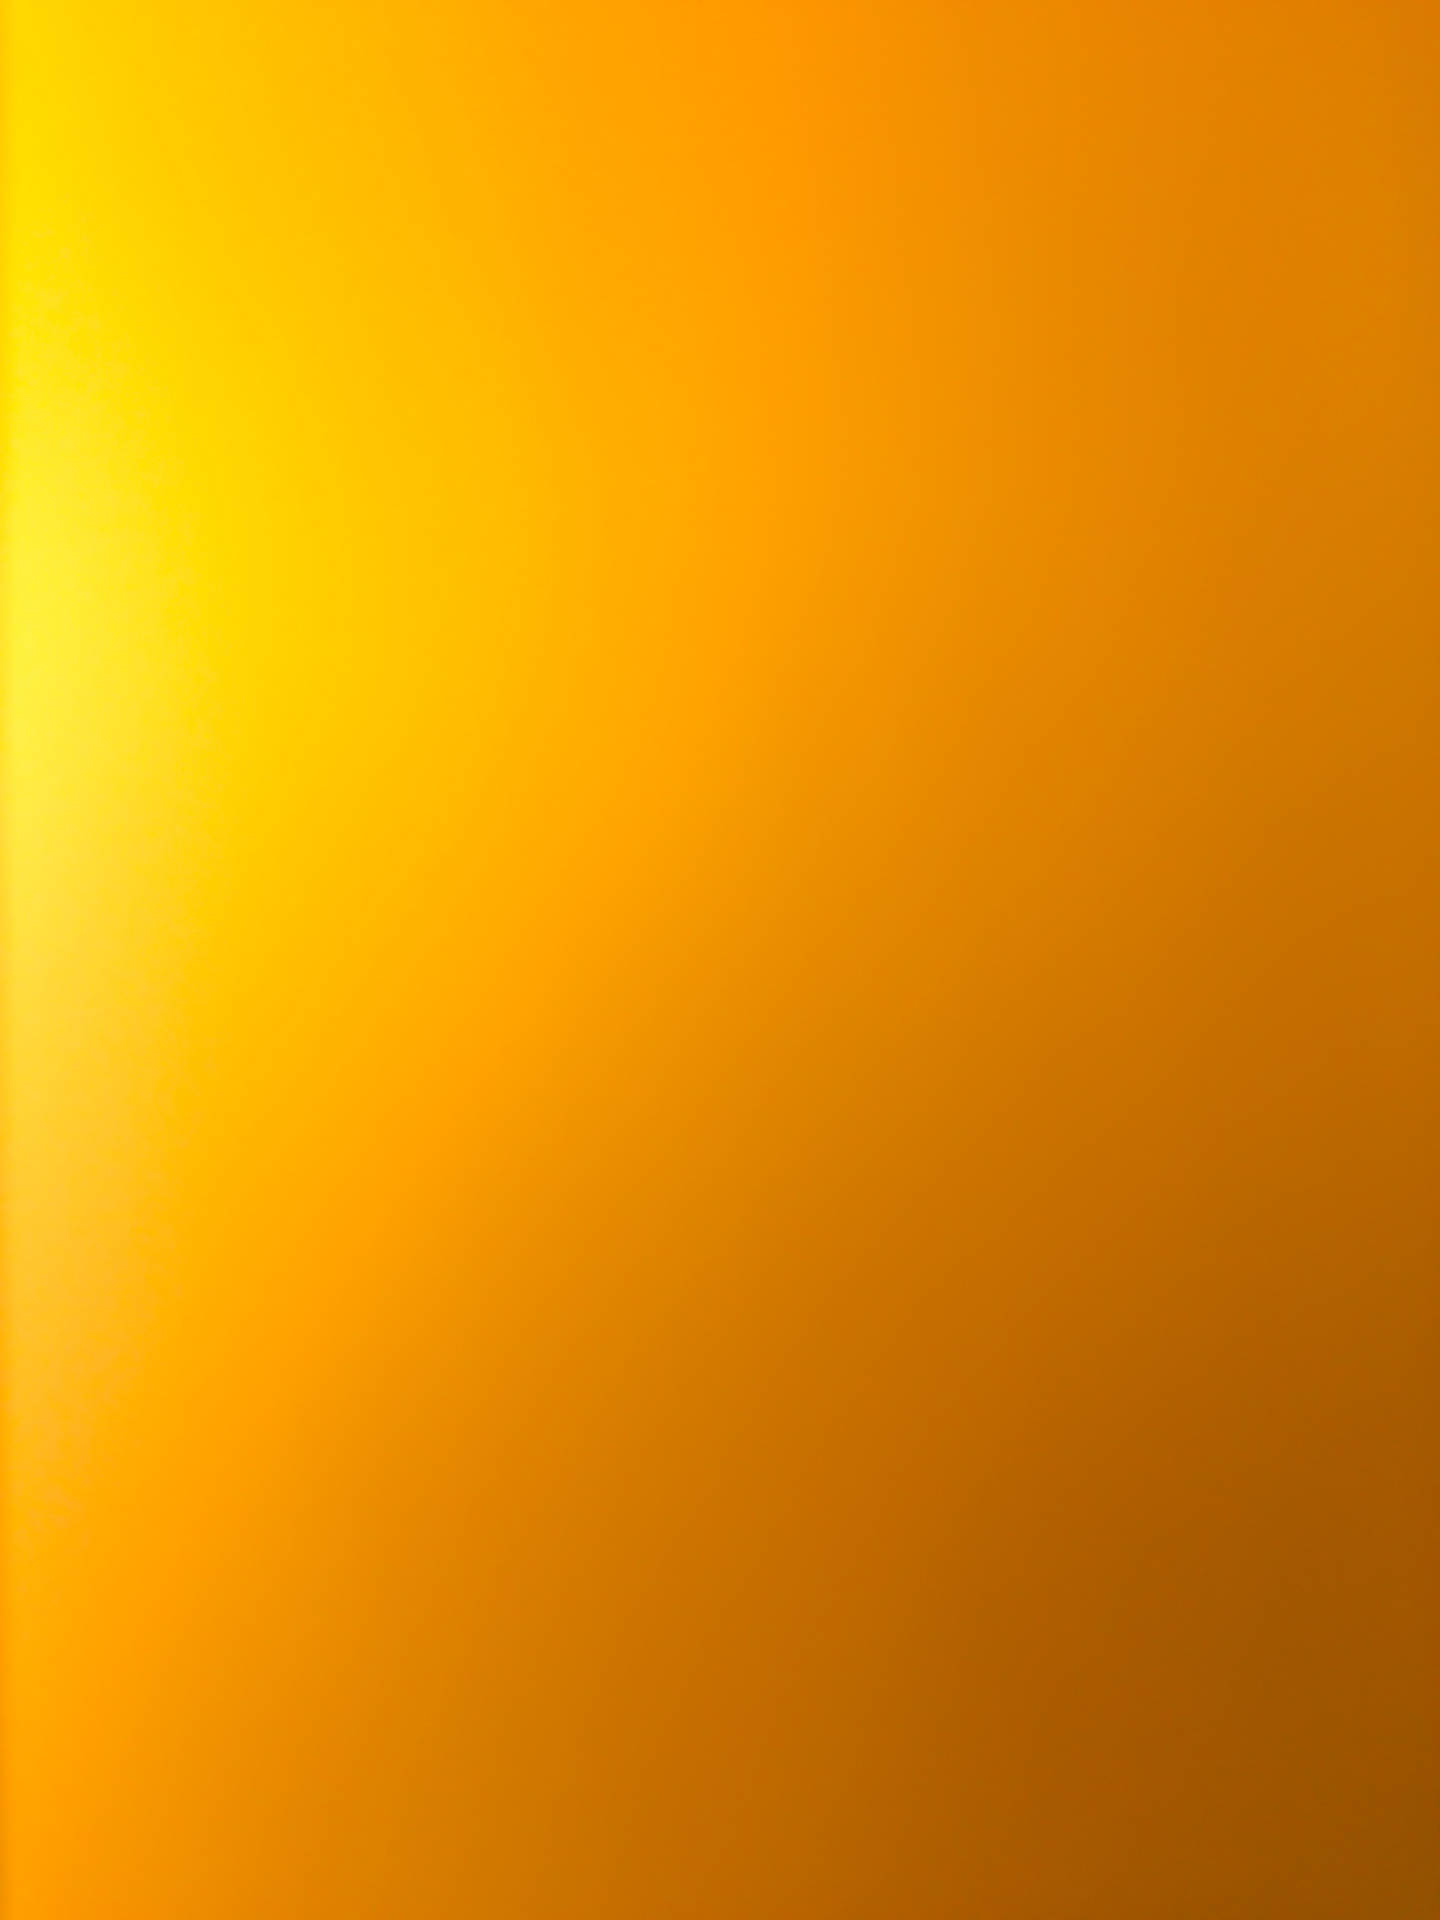 Yellow Orange Gradient Wallpaper